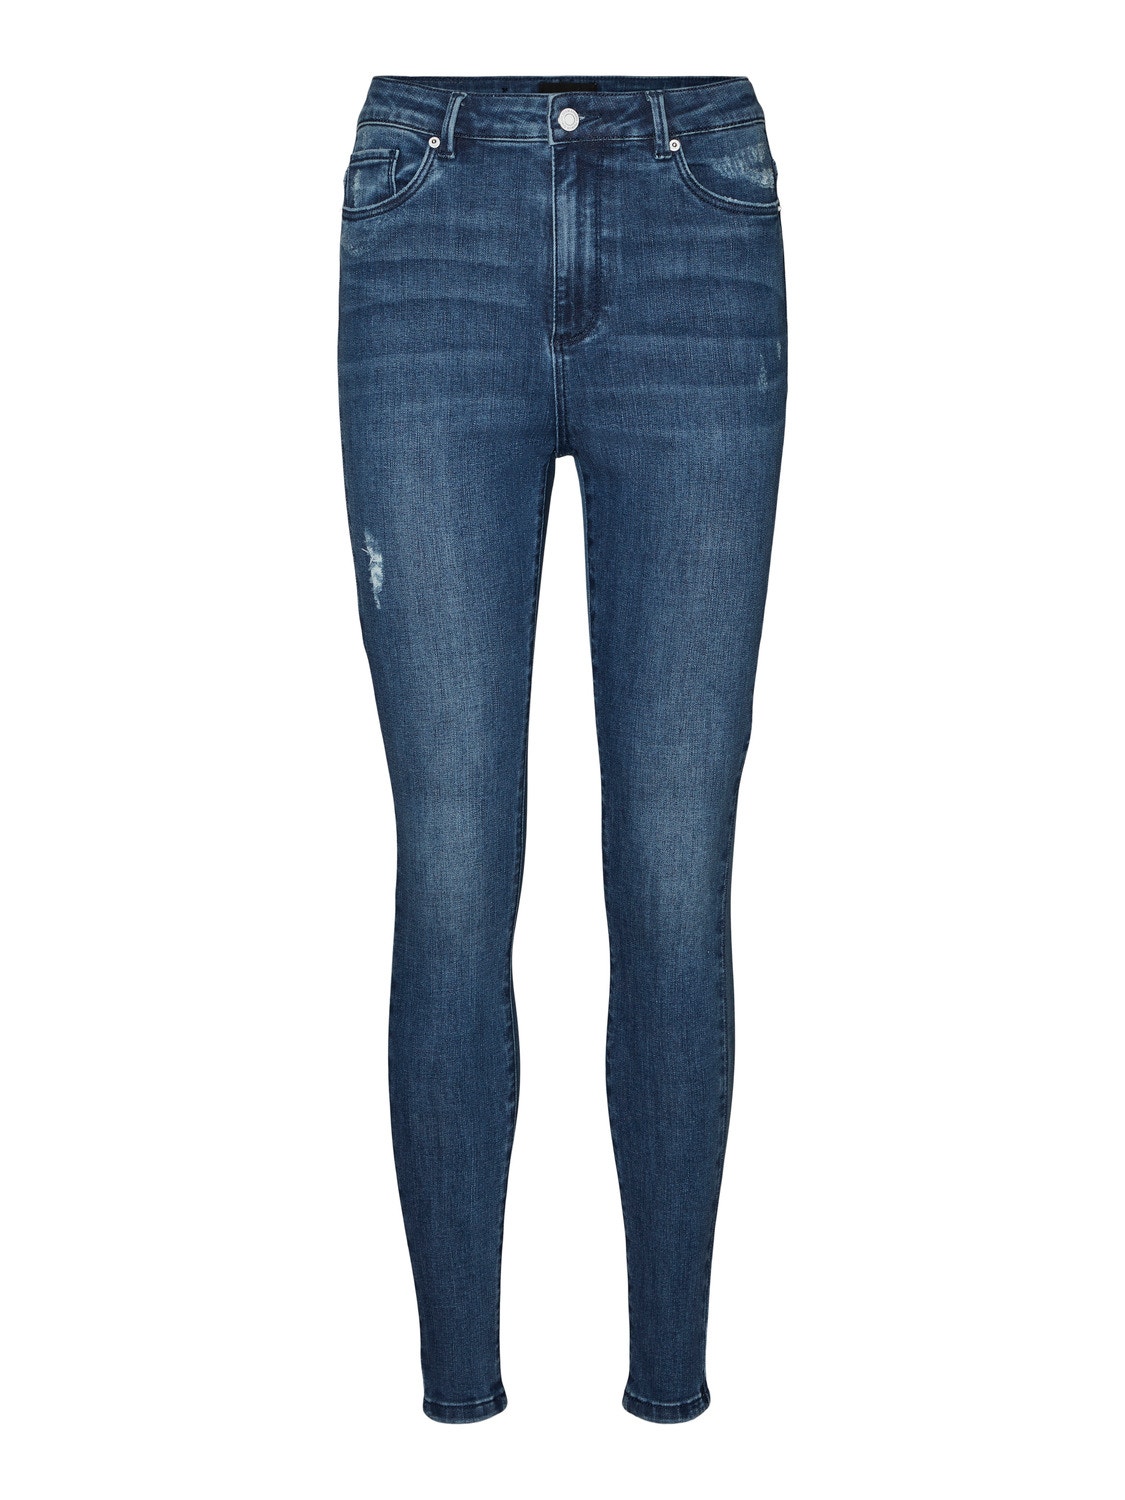 Vero Moda VMSOPHIA Skinny Fit Jeans -Medium Blue Denim - 10275356